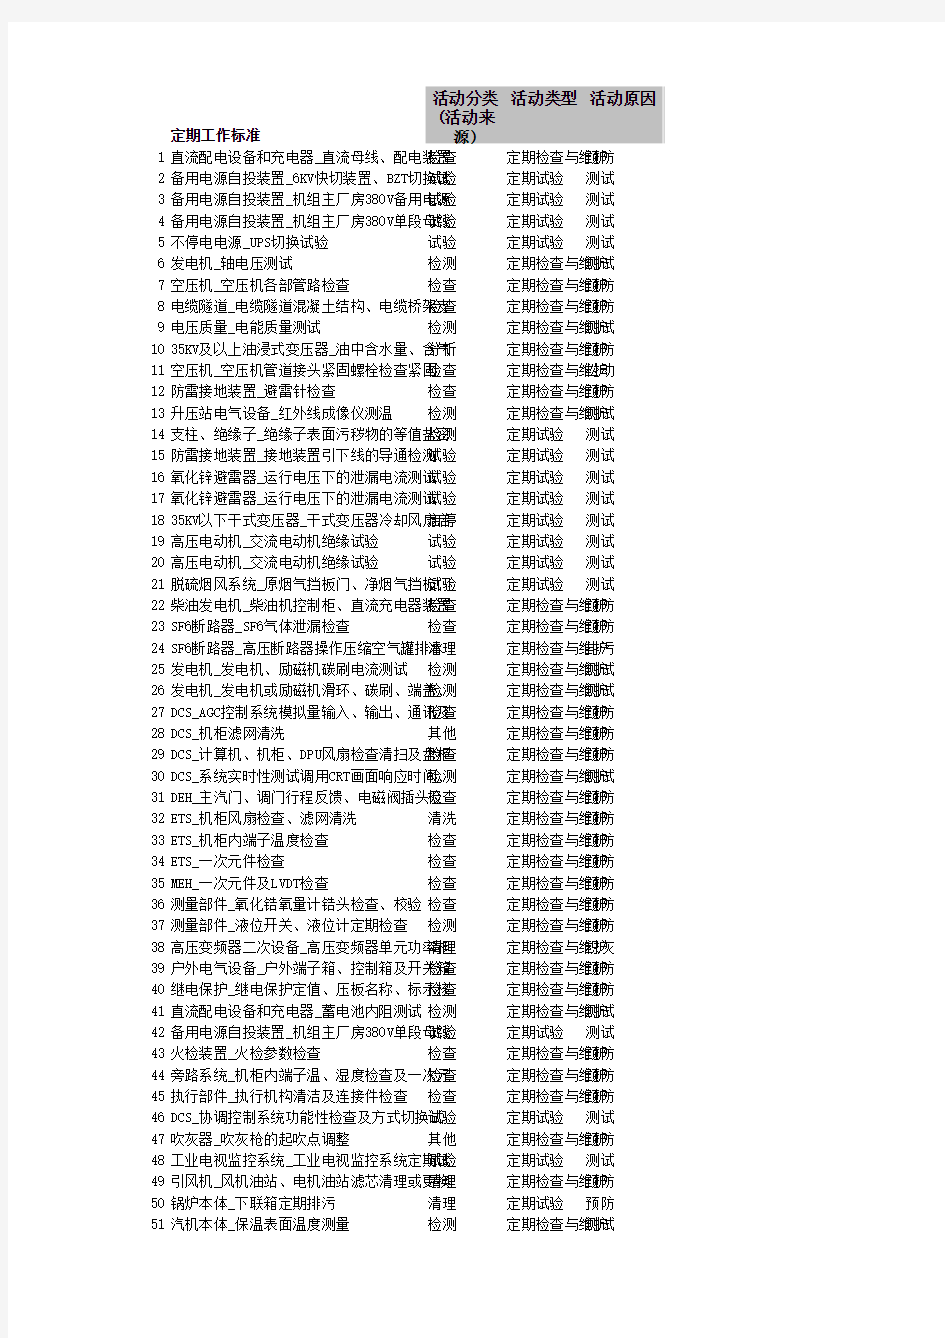 湘潭电厂检修定期工作1号机组(300MW机组)